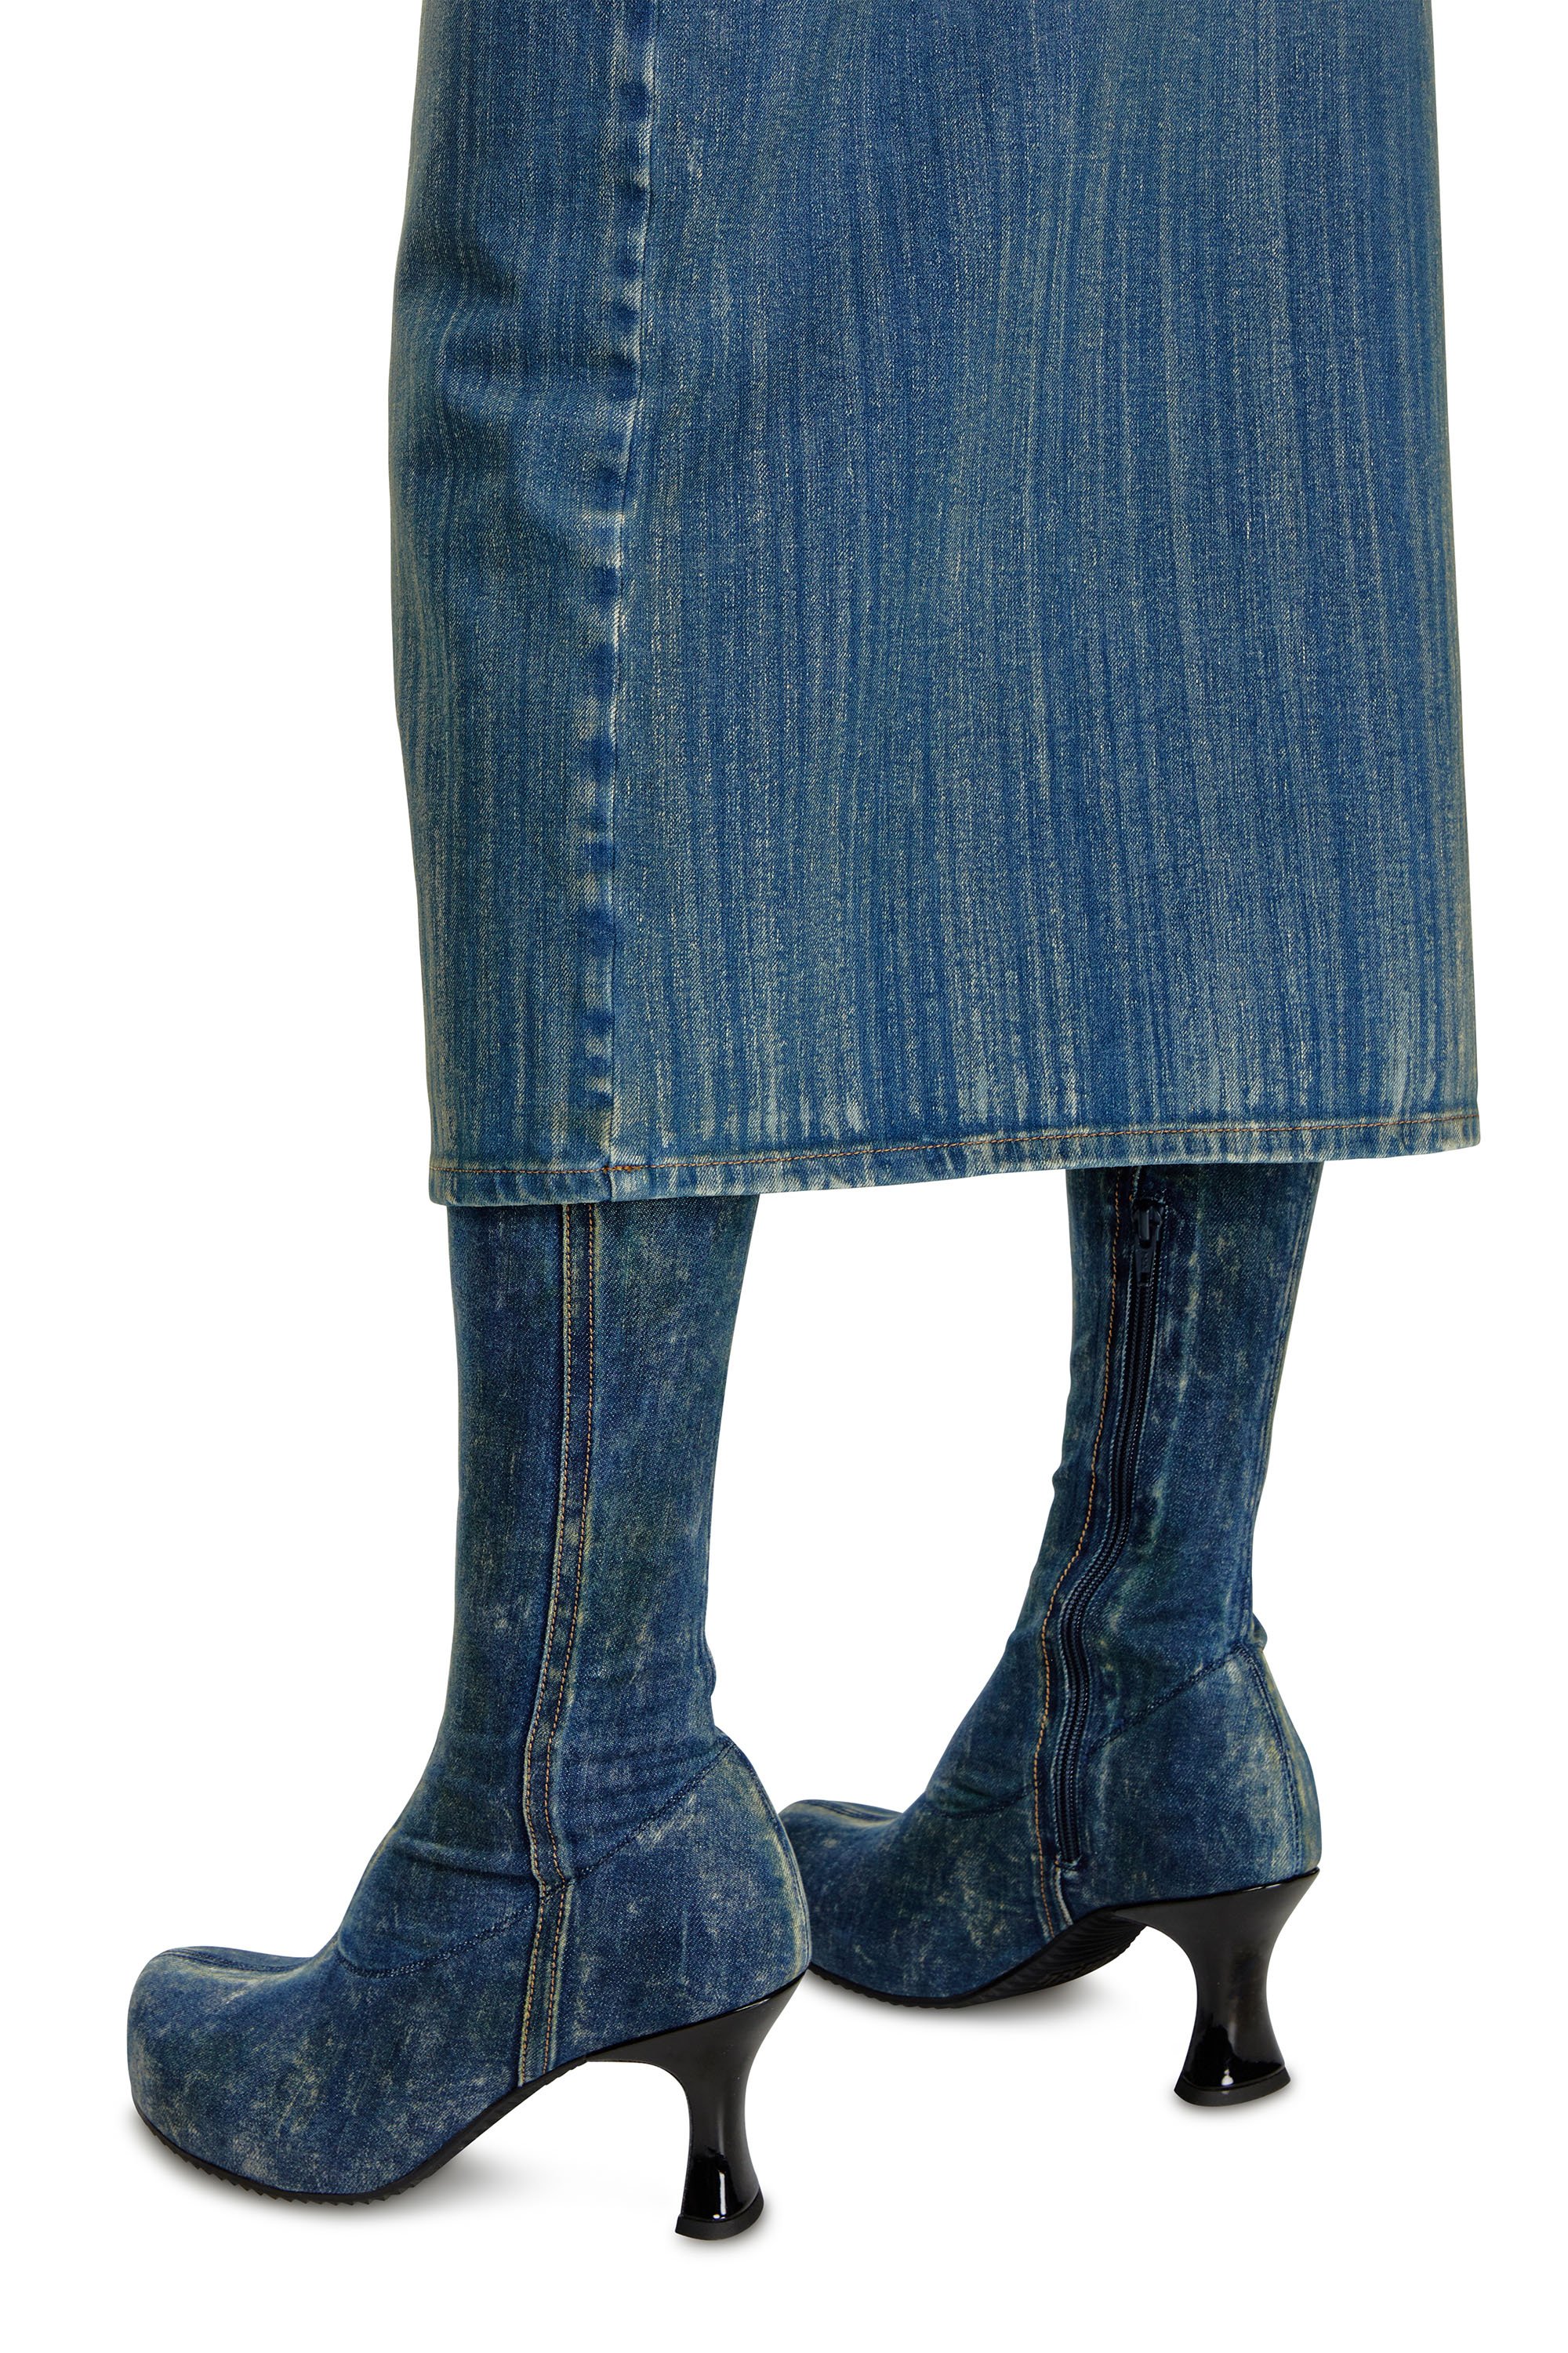 Diesel - DE-MAURY-S, Woman Pencil skirt in light streaky denim in Blue - Image 4